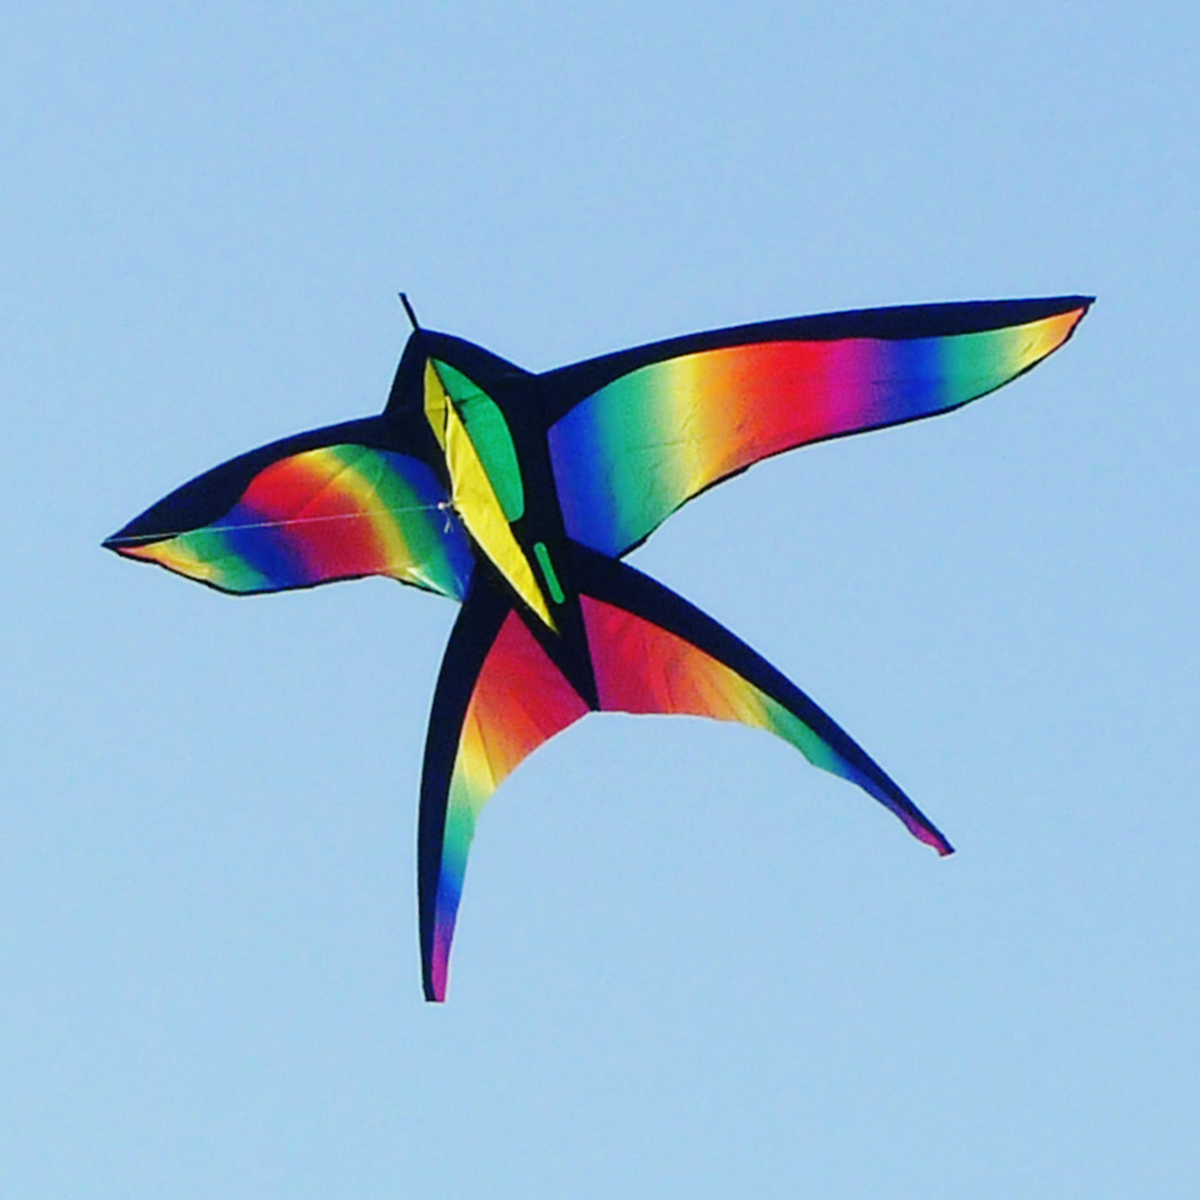 68in-Swallow-Kite-Bird-Kites-Single-Line-Outdoor-Fun-Sports-Toys-Delta-For-Kids-1130511-3